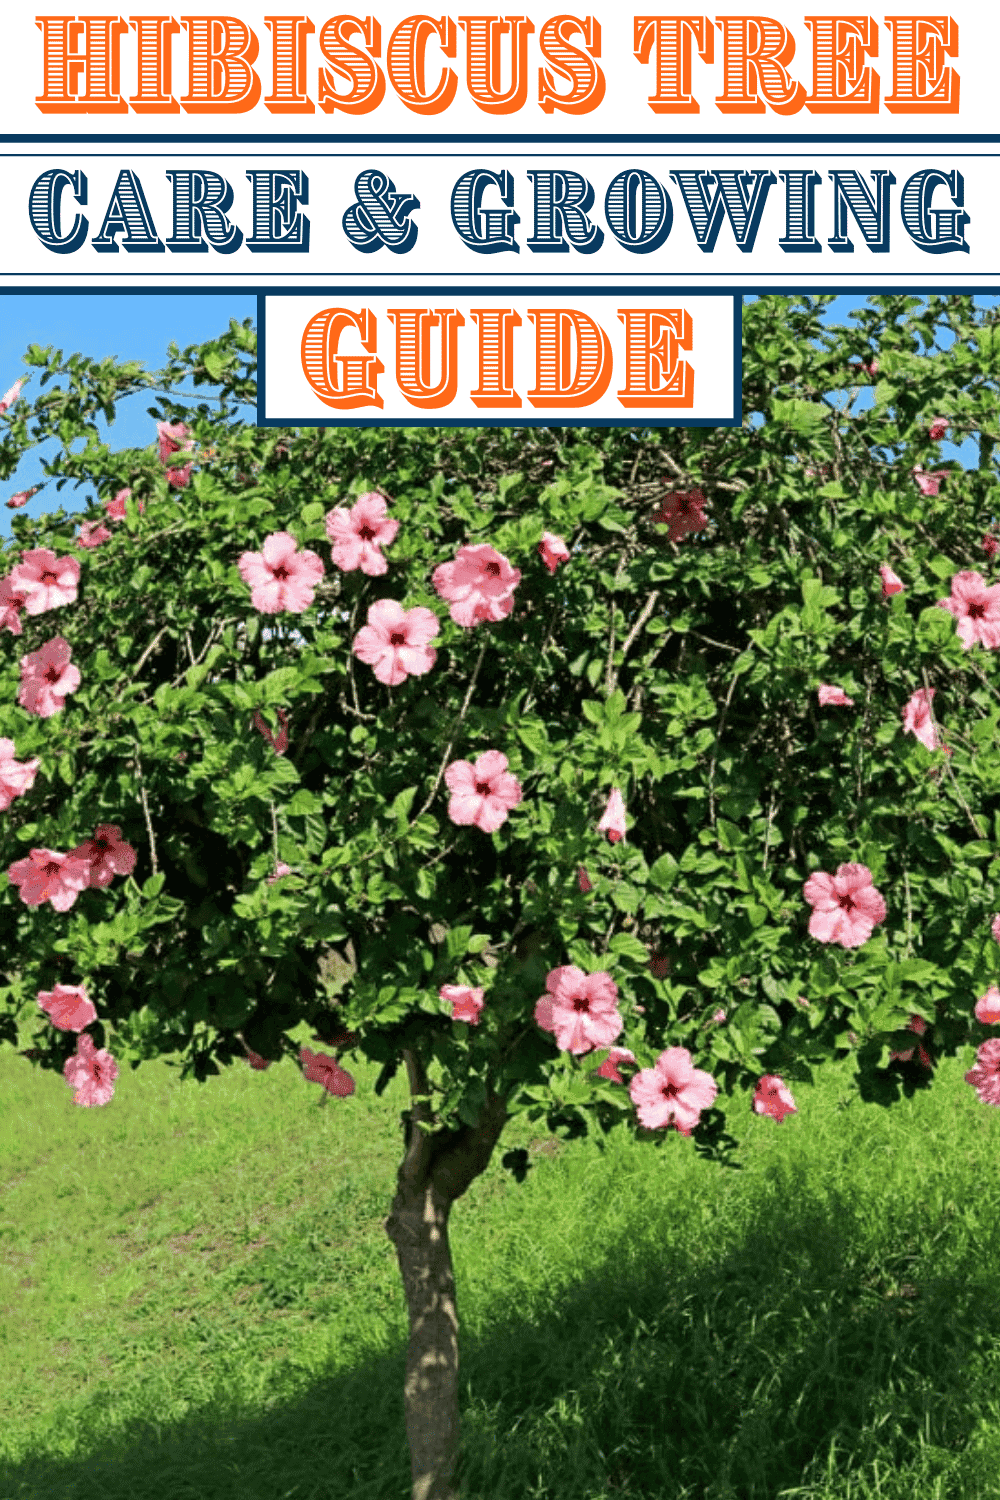 Hibiscus Tree